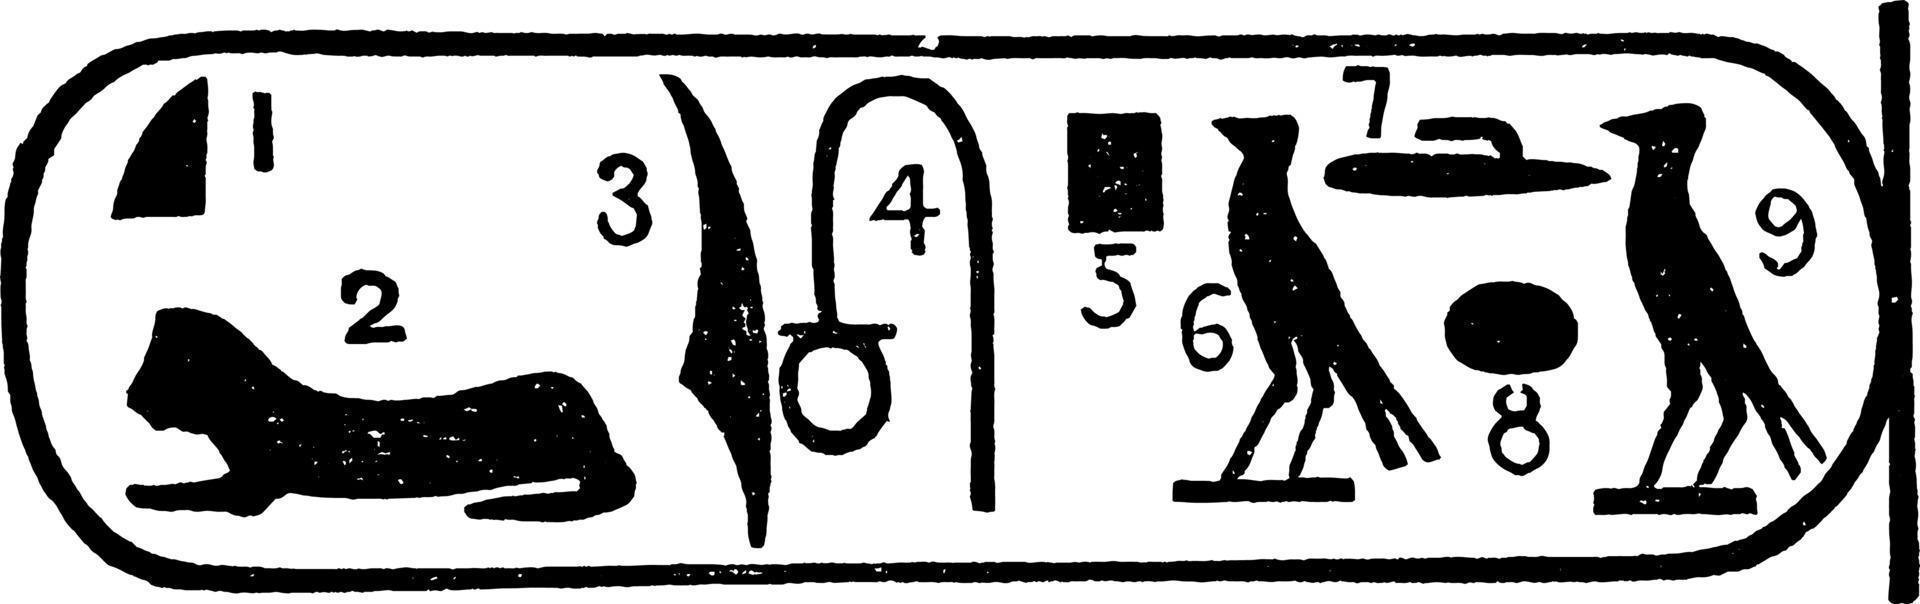 Rosetta-Stein oder Lesen von Hieroglyphen, Vintage-Gravur vektor